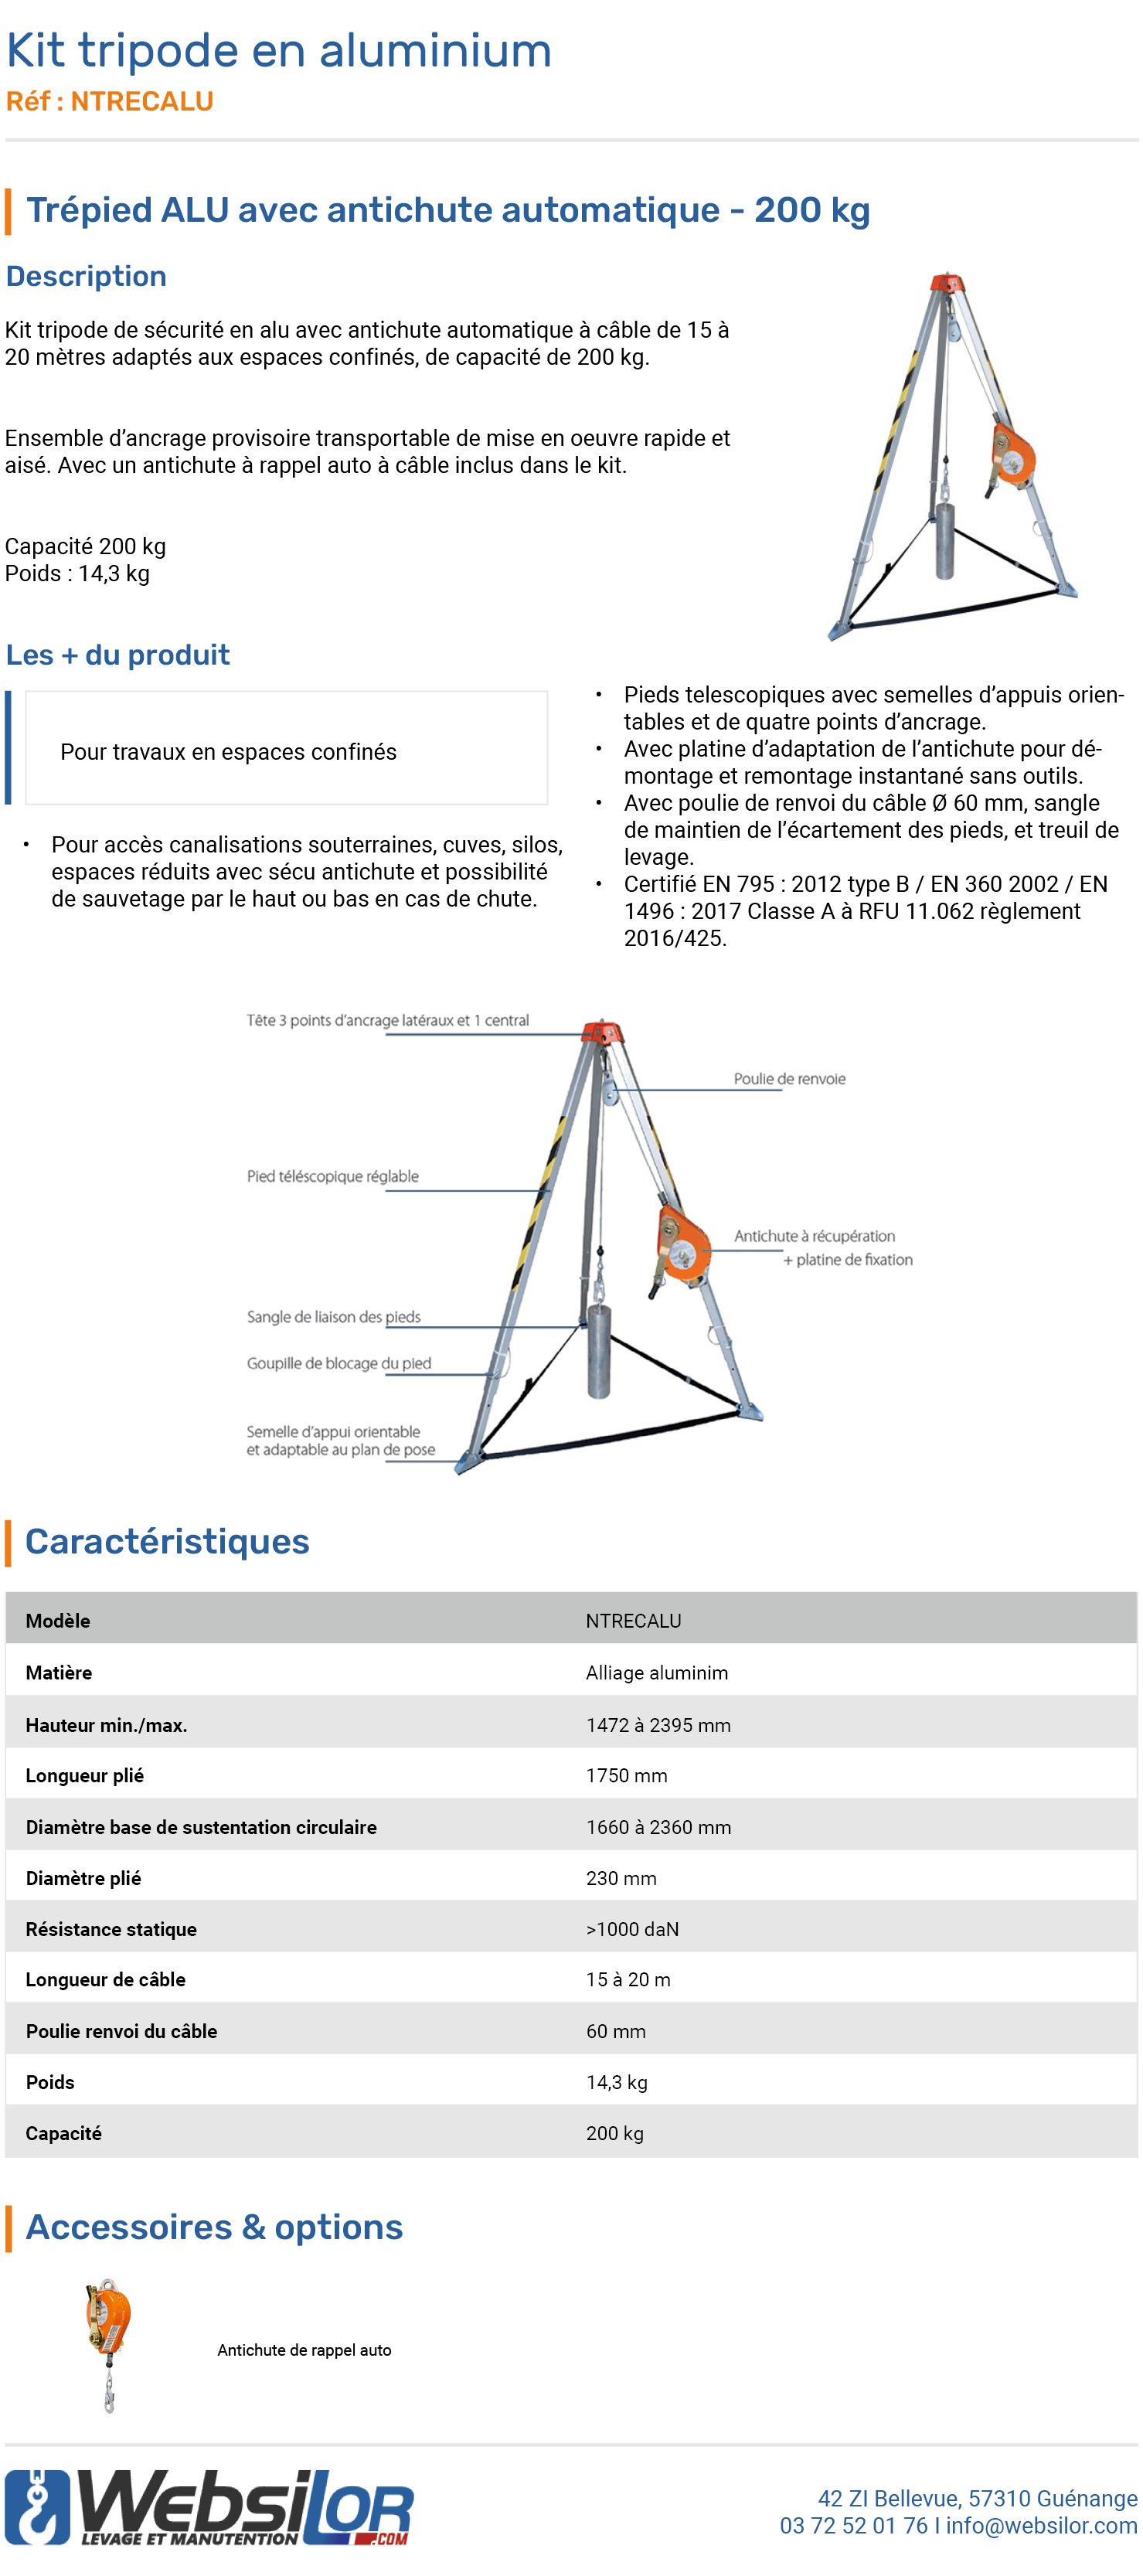 Informations technique de Kit tripode de sécurité avec antichute auto à câble de 15 m